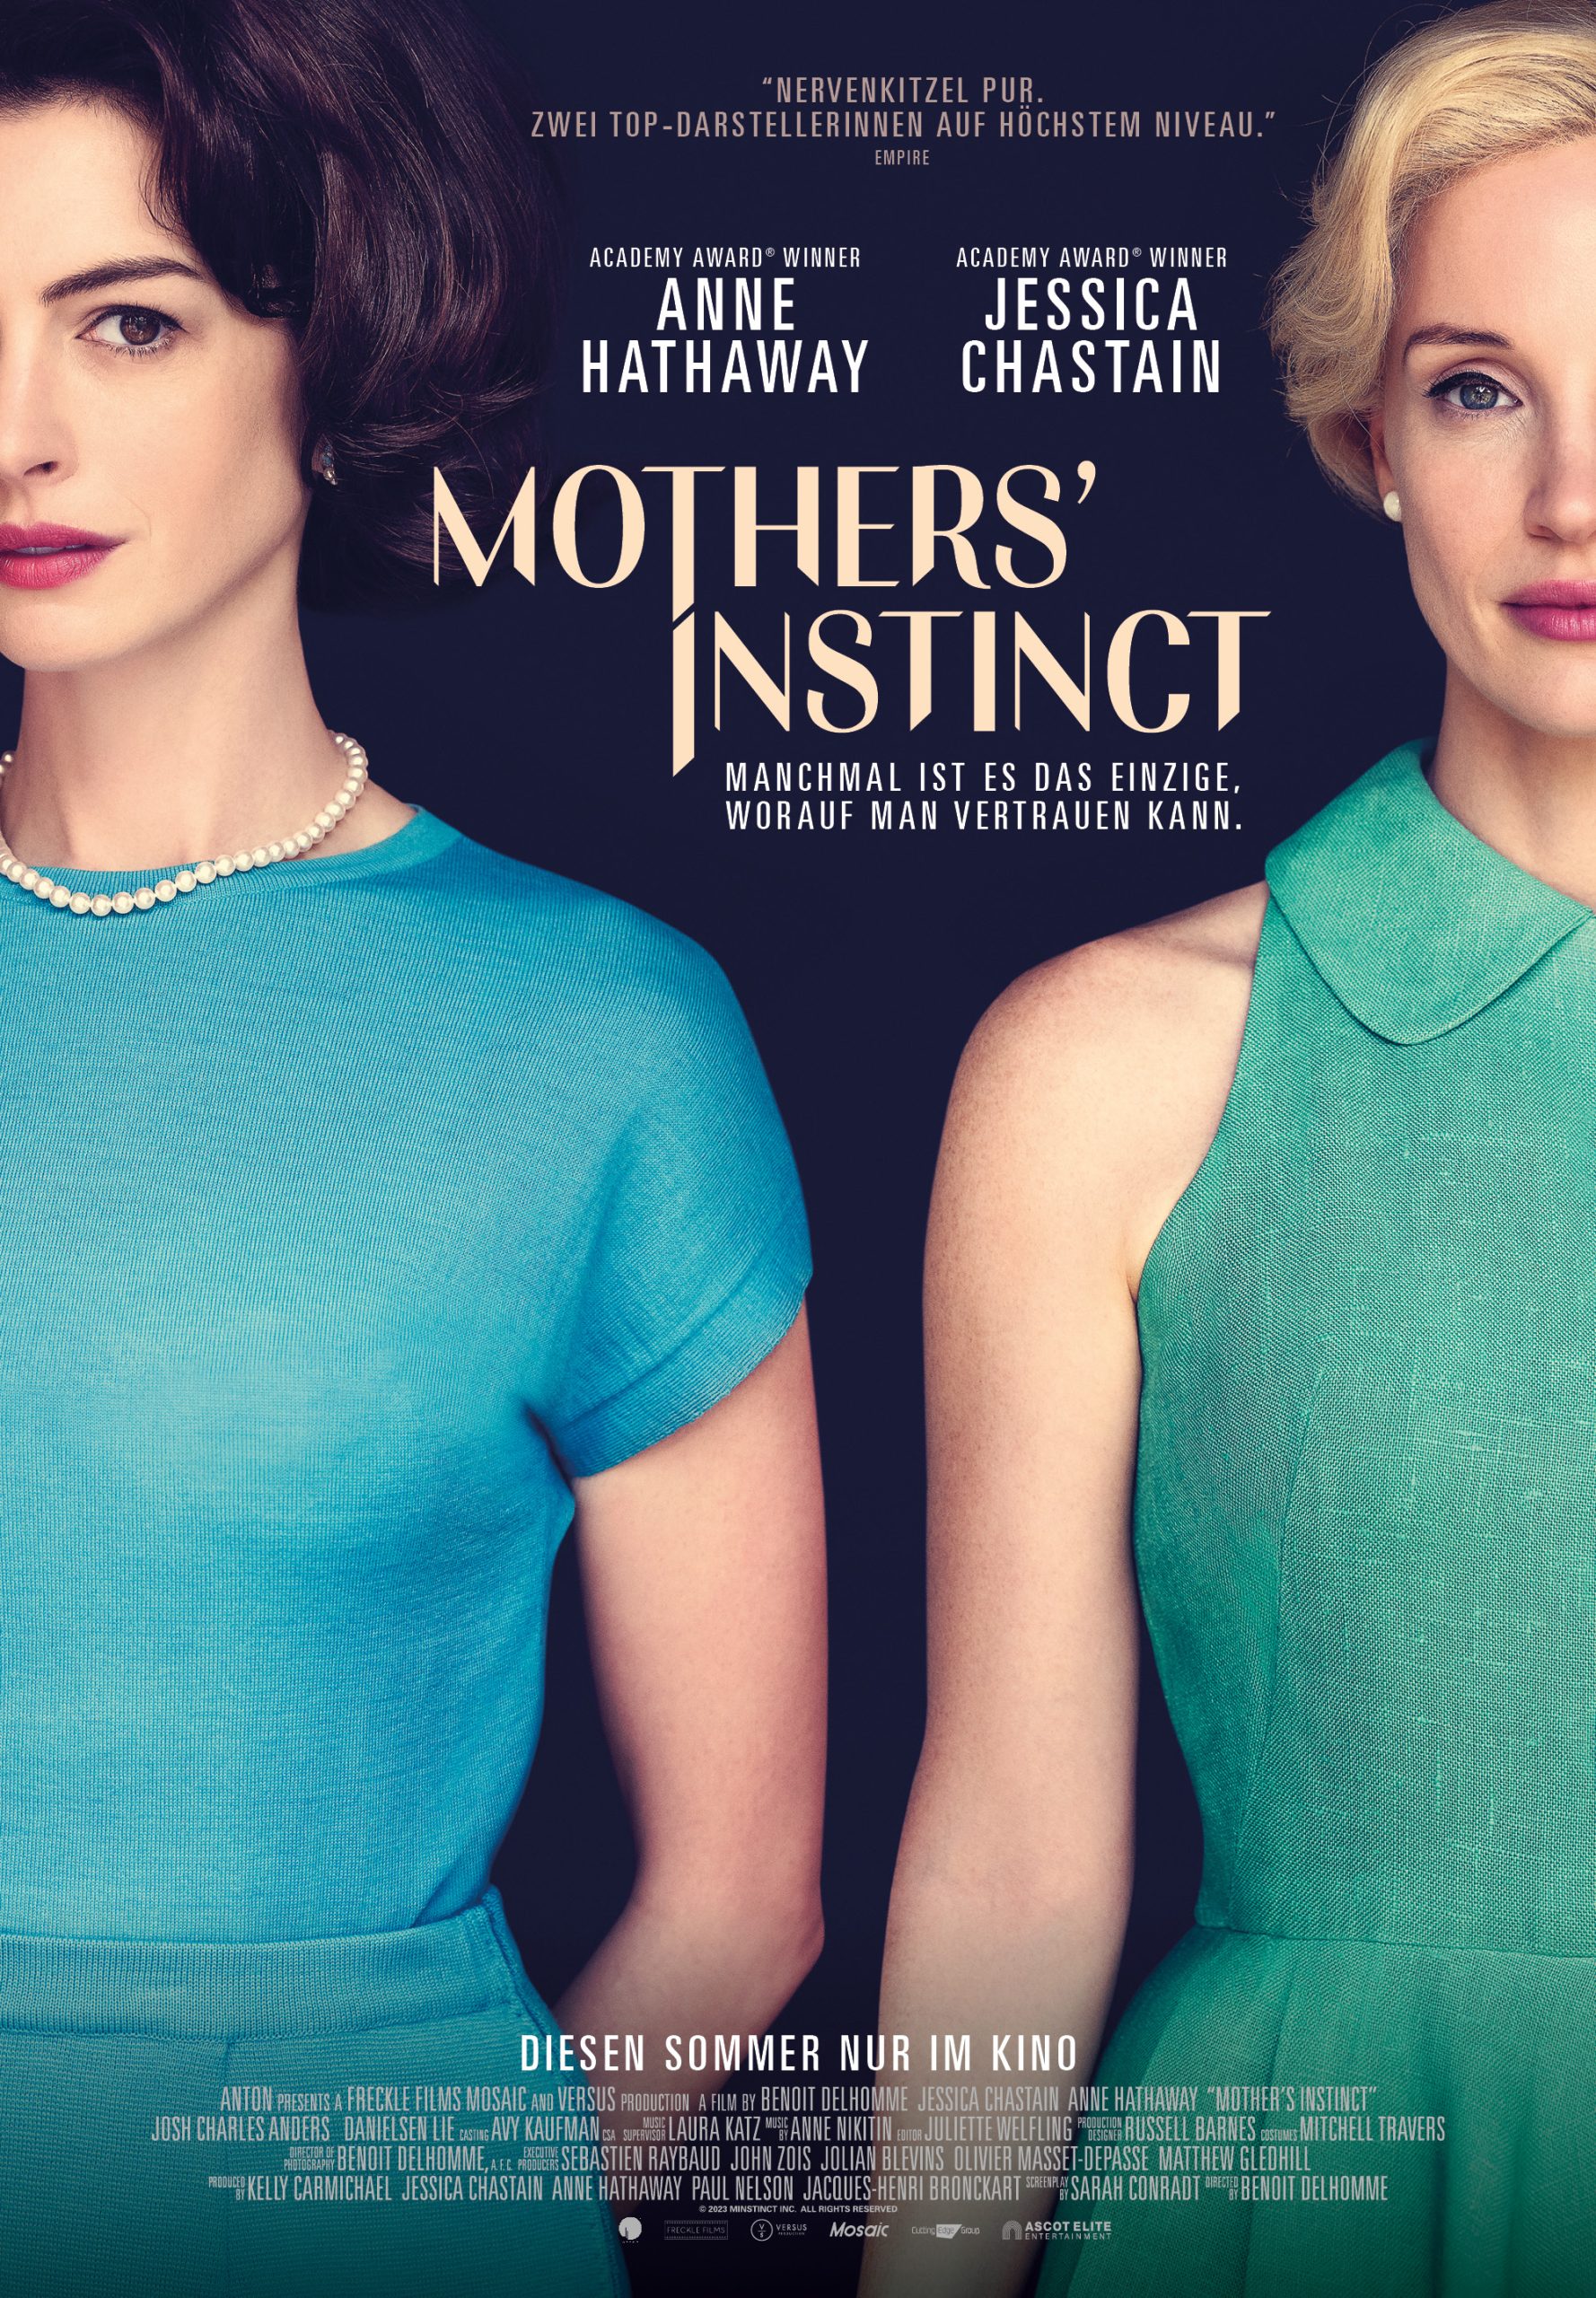 Affiche du film "Mother's Instinct" avec Anne Hathaway et Jessica Chastain, habillées élégamment